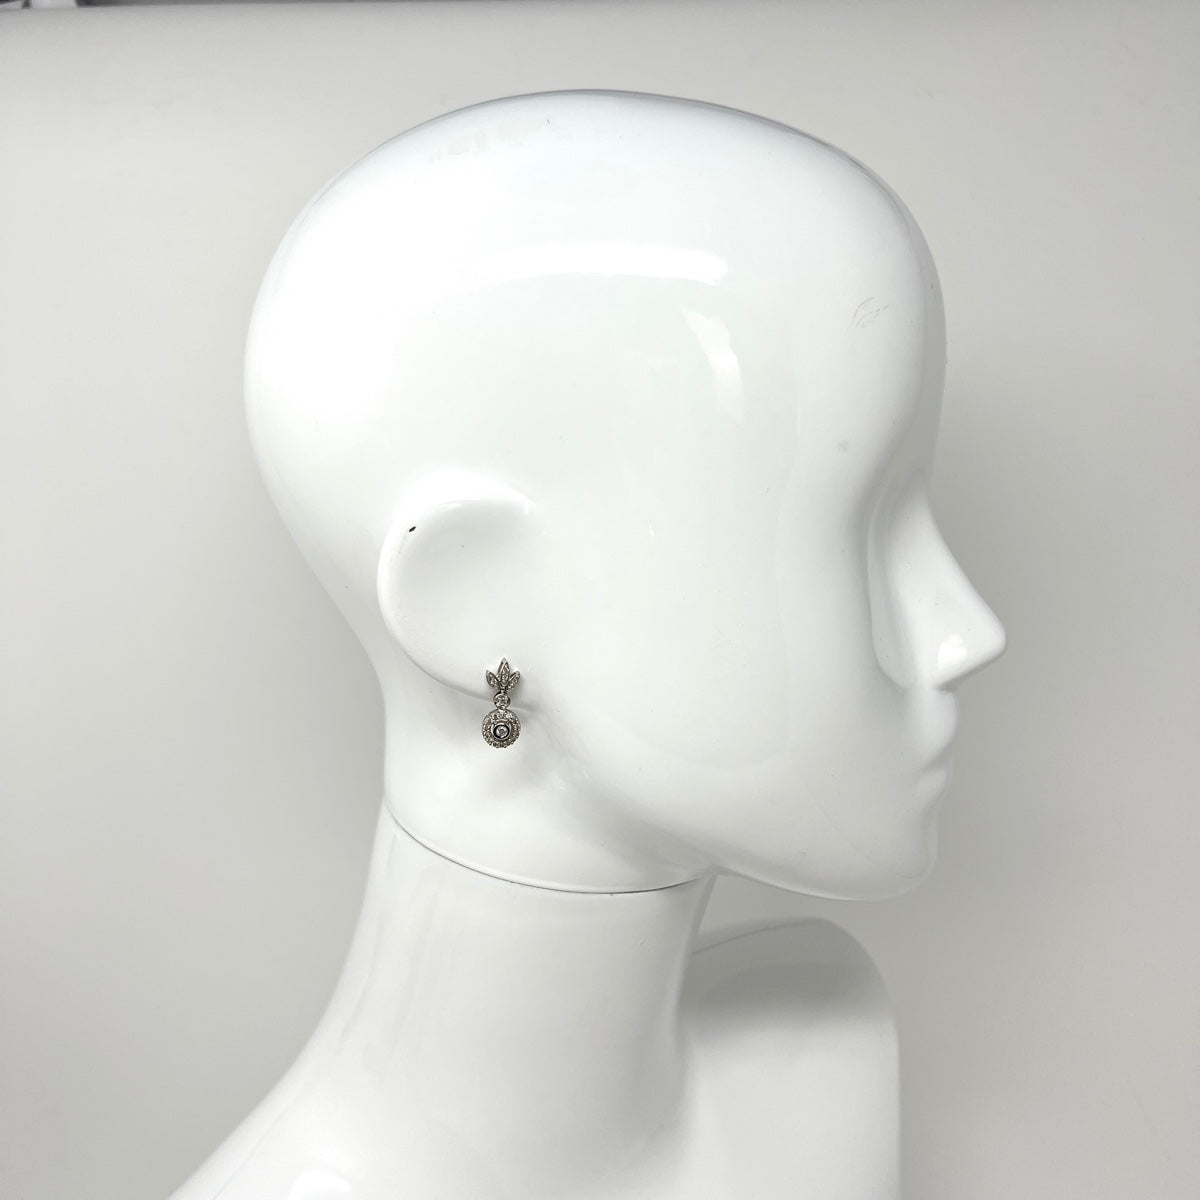 14K White Gold Diamond Drop Earrings